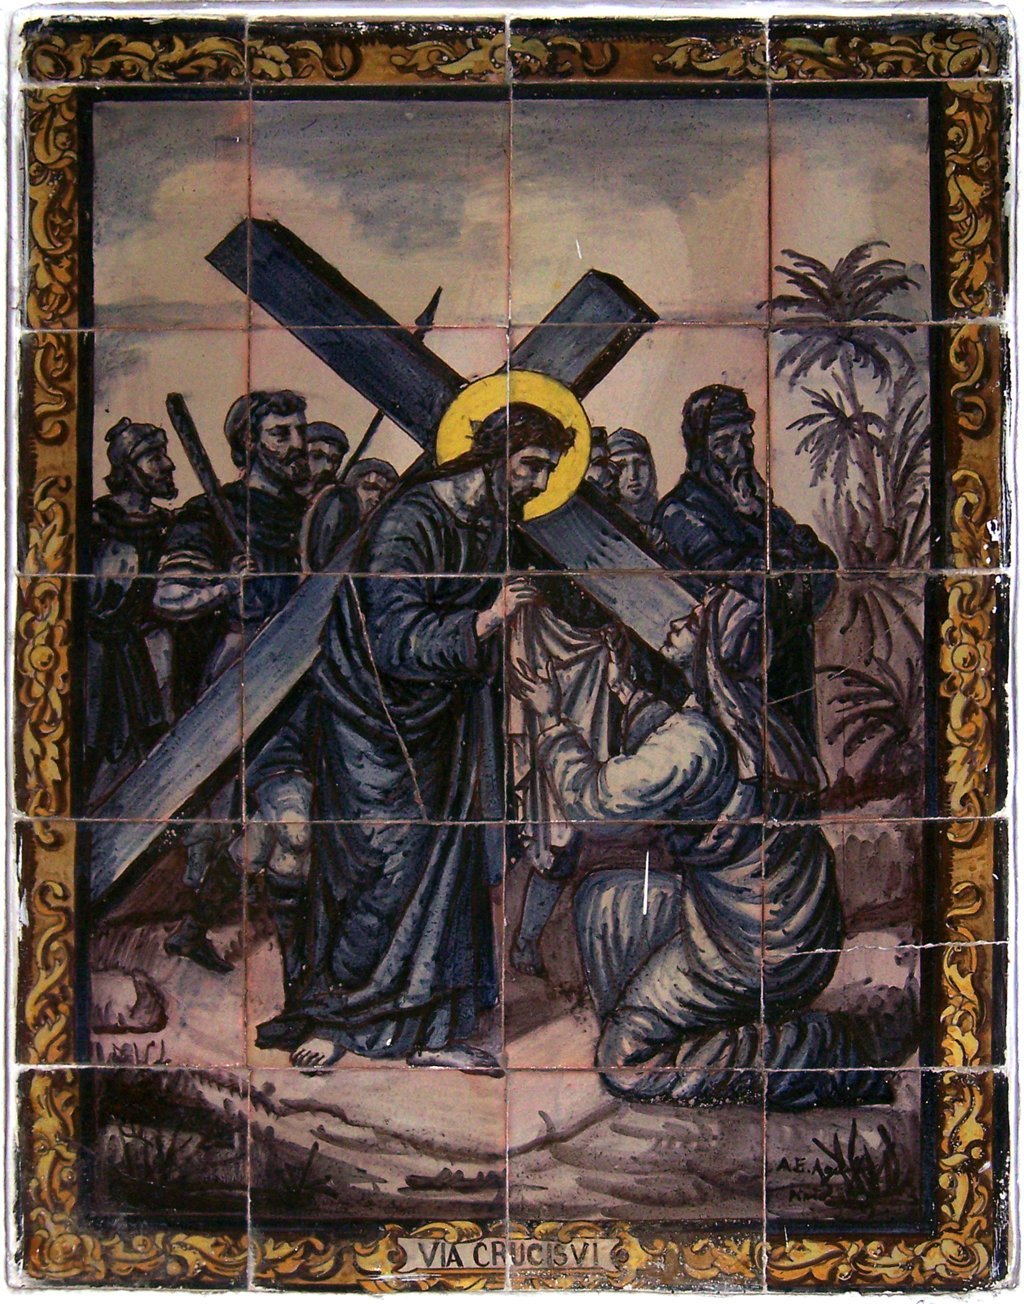 02834. Retablo cerámico. Escena de Vía Crucis. Sexta estación. Iglesia de San Juan de la Palma. Sevilla.